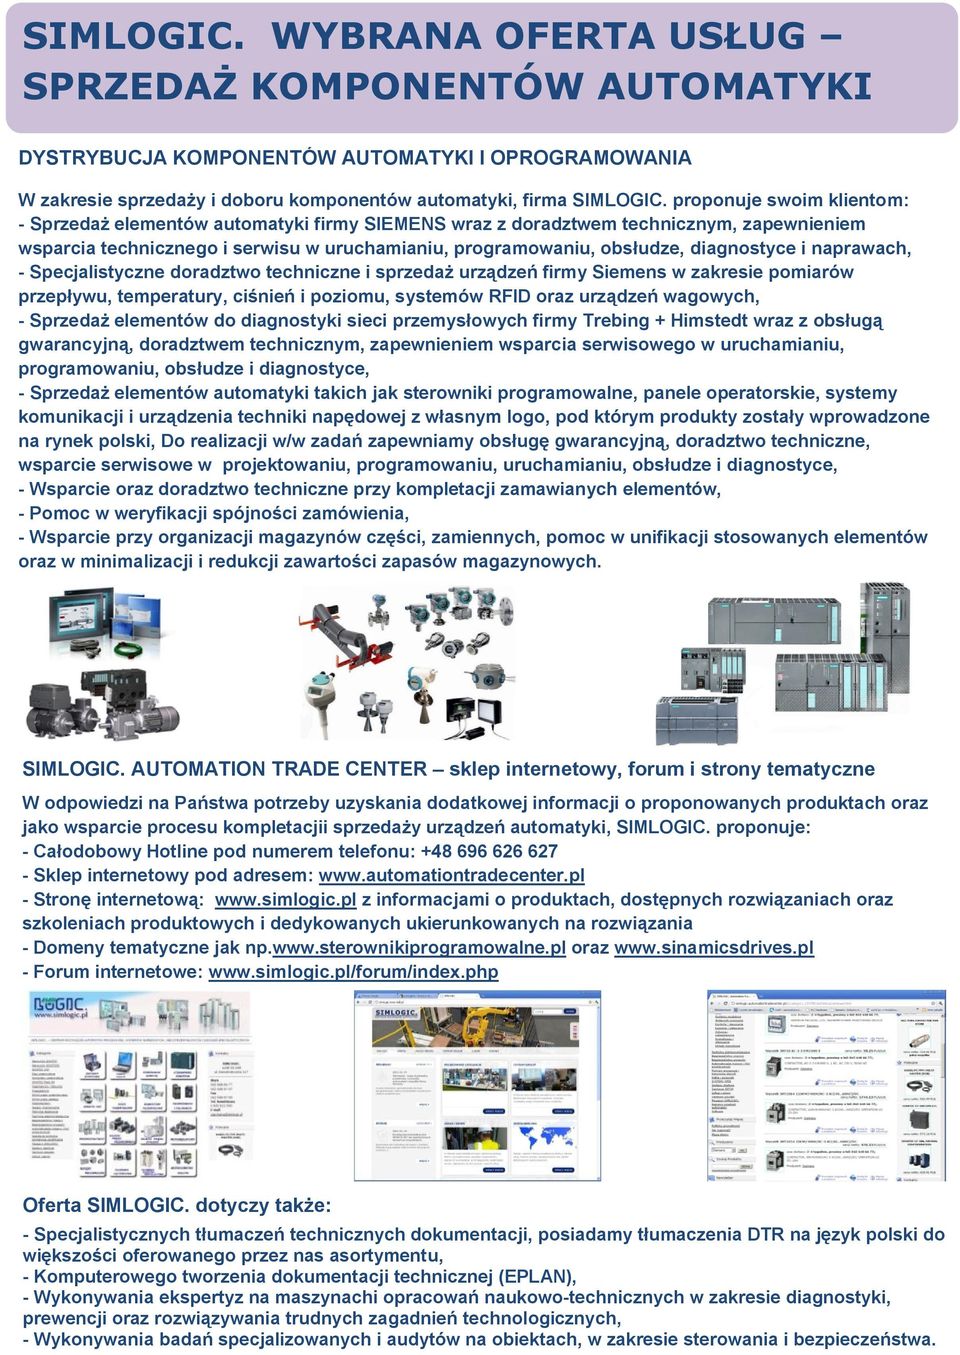 diagnostyce i naprawach, - Specjalistyczne doradztwo techniczne i sprzedaż urządzeń firmy Siemens w zakresie pomiarów przepływu, temperatury, ciśnień i poziomu, systemów RFID oraz urządzeń wagowych,